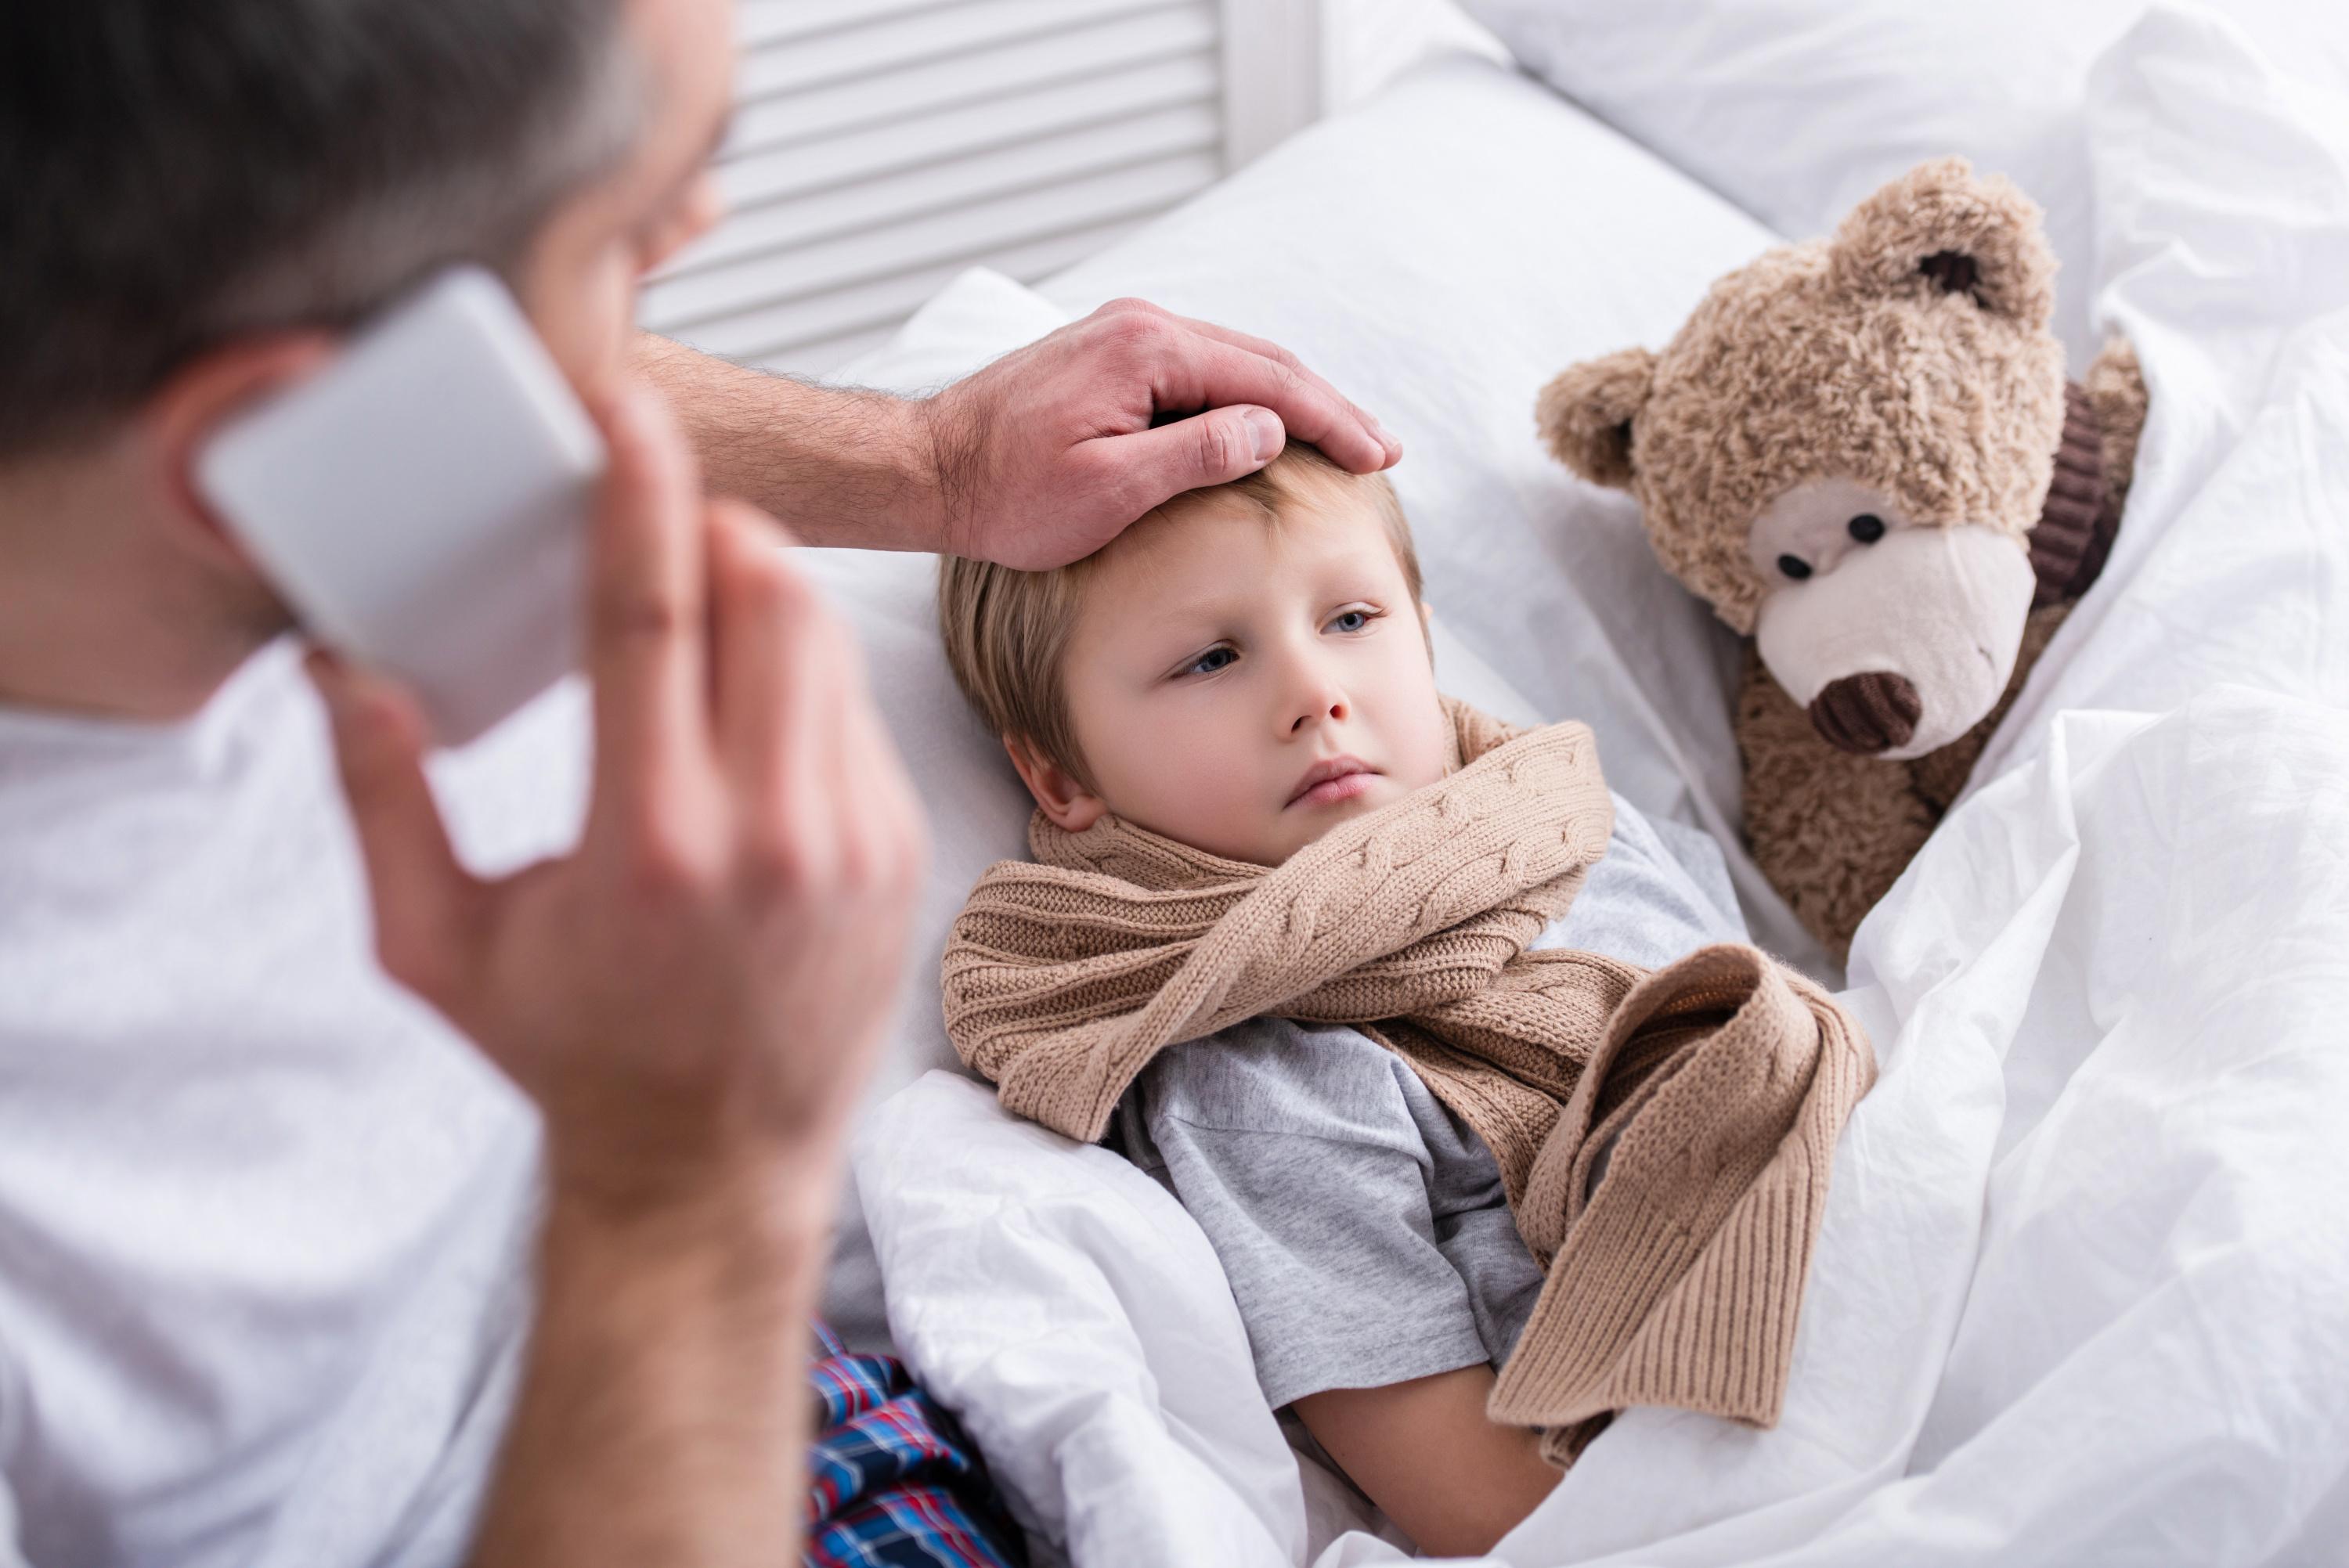 Un enfant malade peut rapidement chambouler votre quotidien.